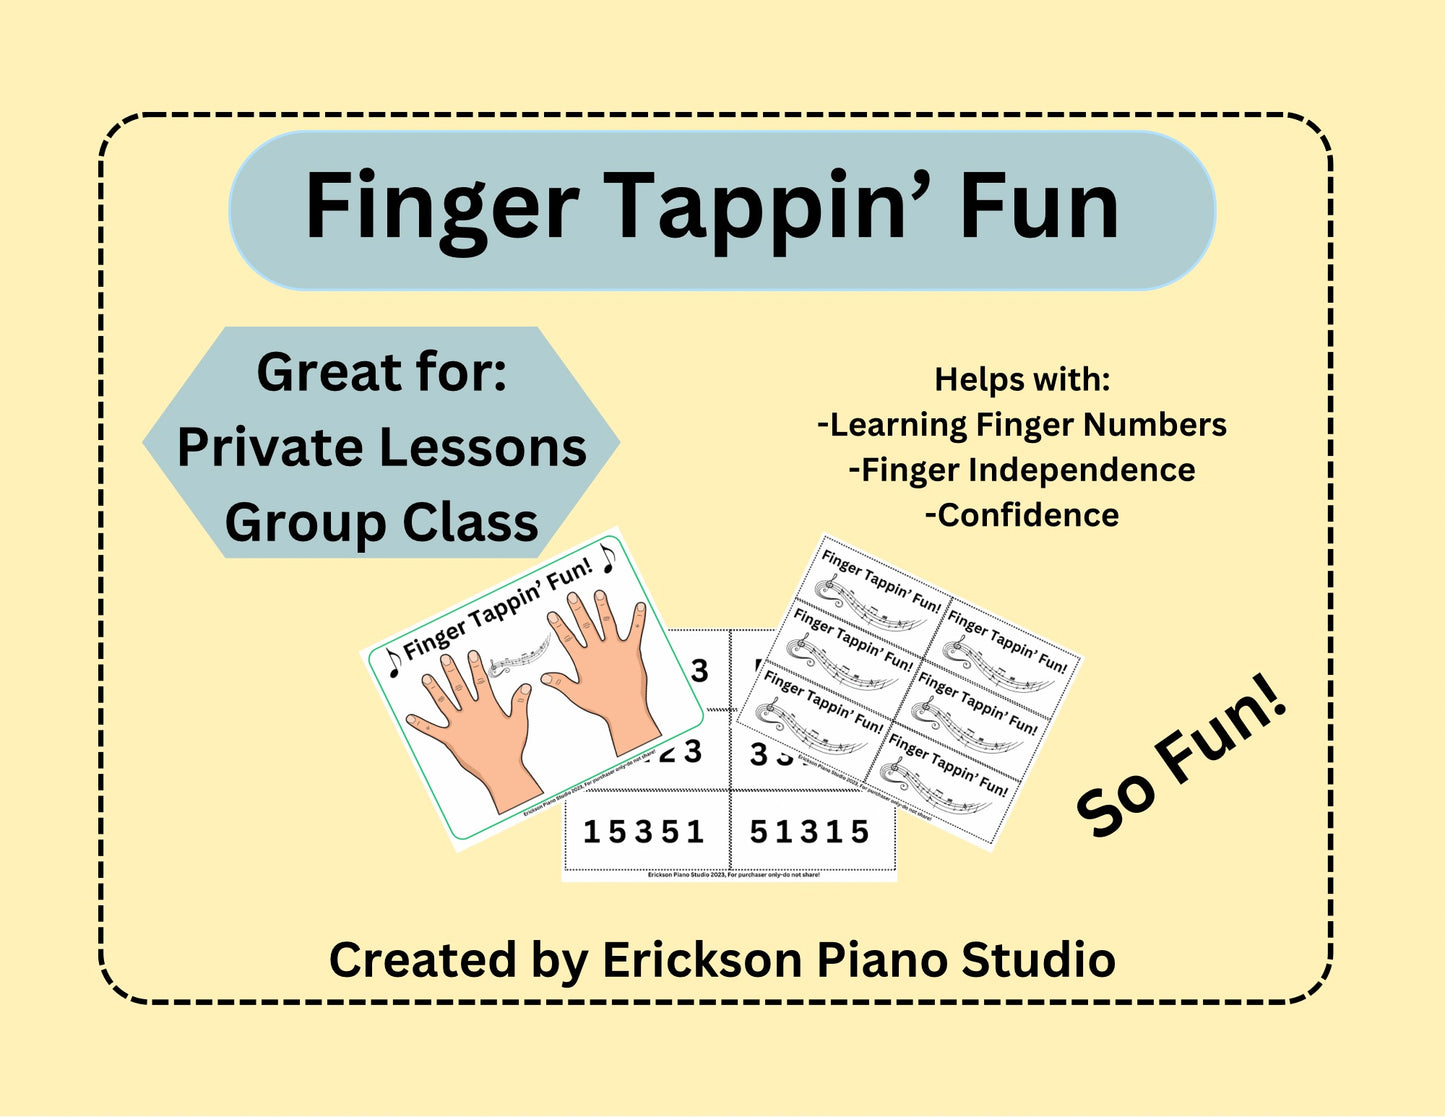 Finger Tappin’ Fun